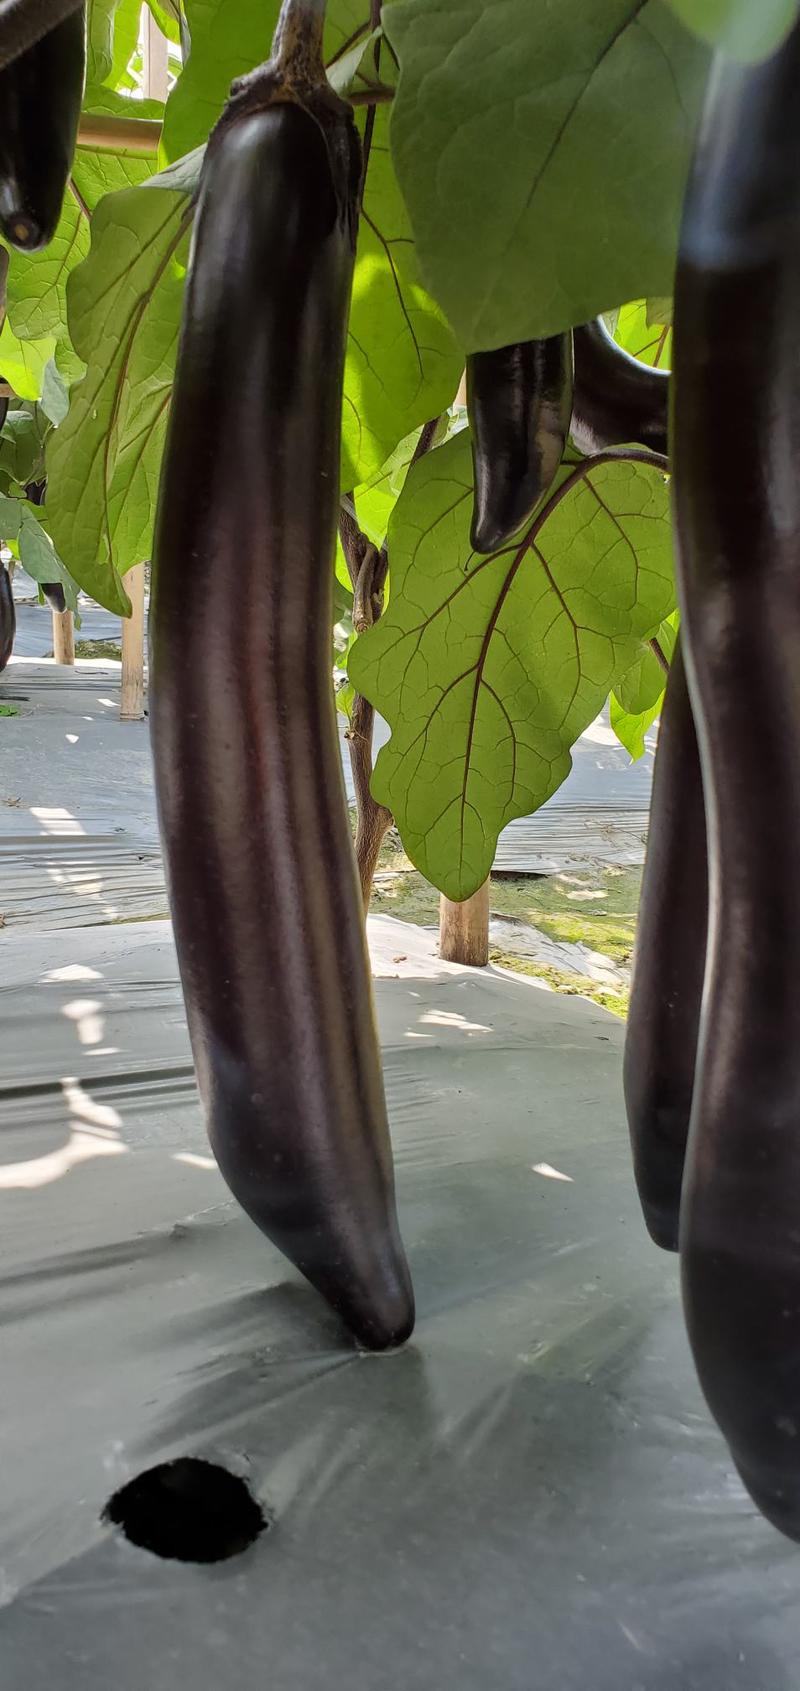 七禾墨茄种子黑帅哥高产早熟顺直长条黑亮型